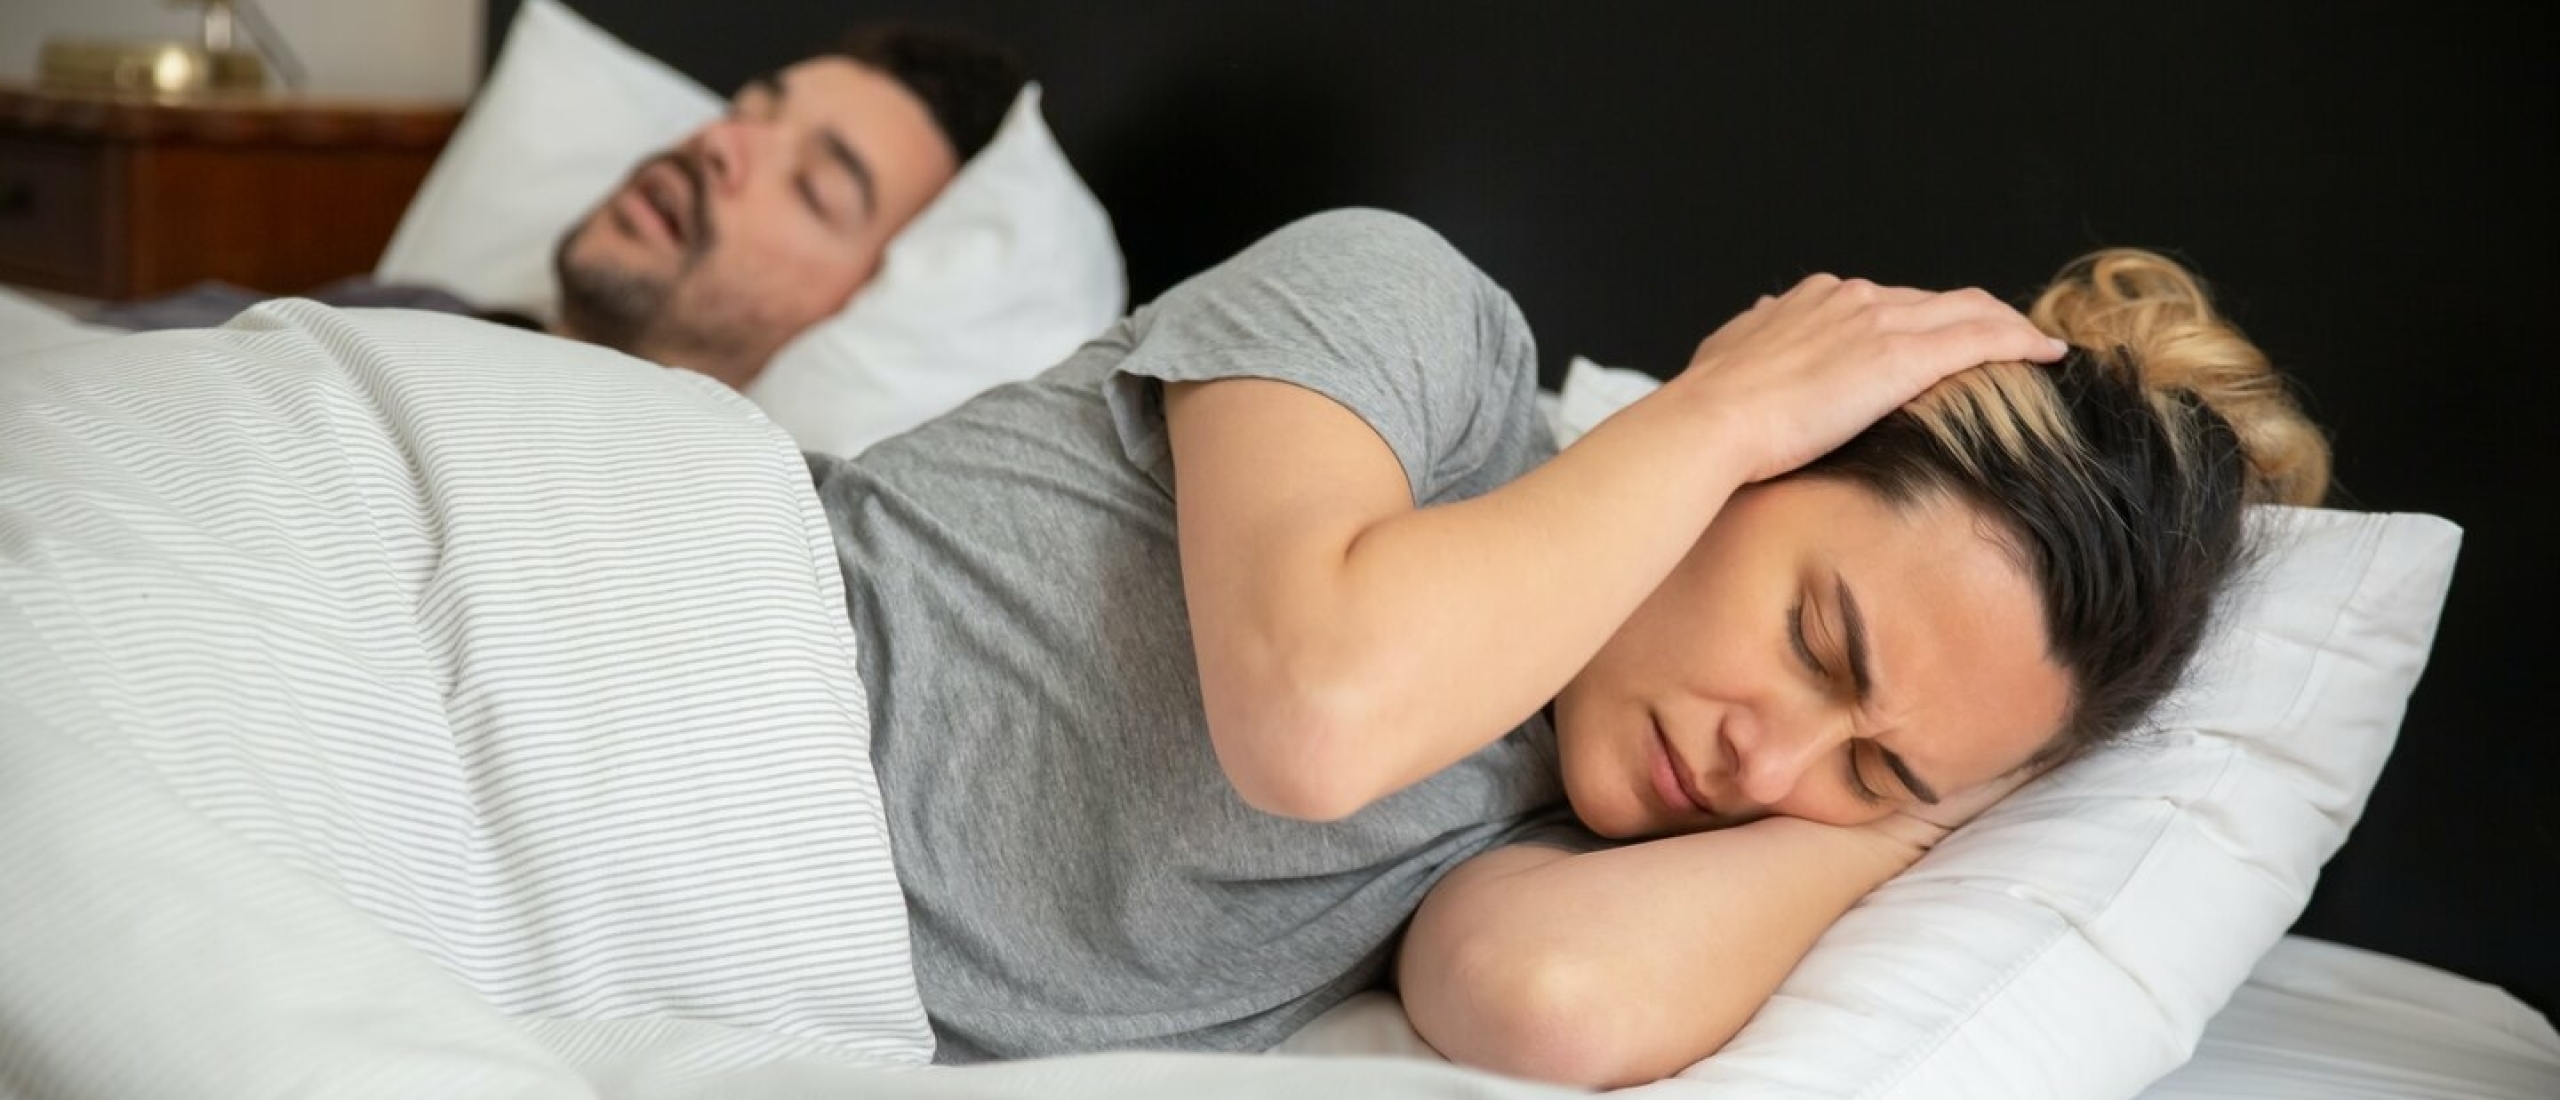 Waarom snurk je meer als je gedronken hebt? alcohol en slapen een slechte combinatie!